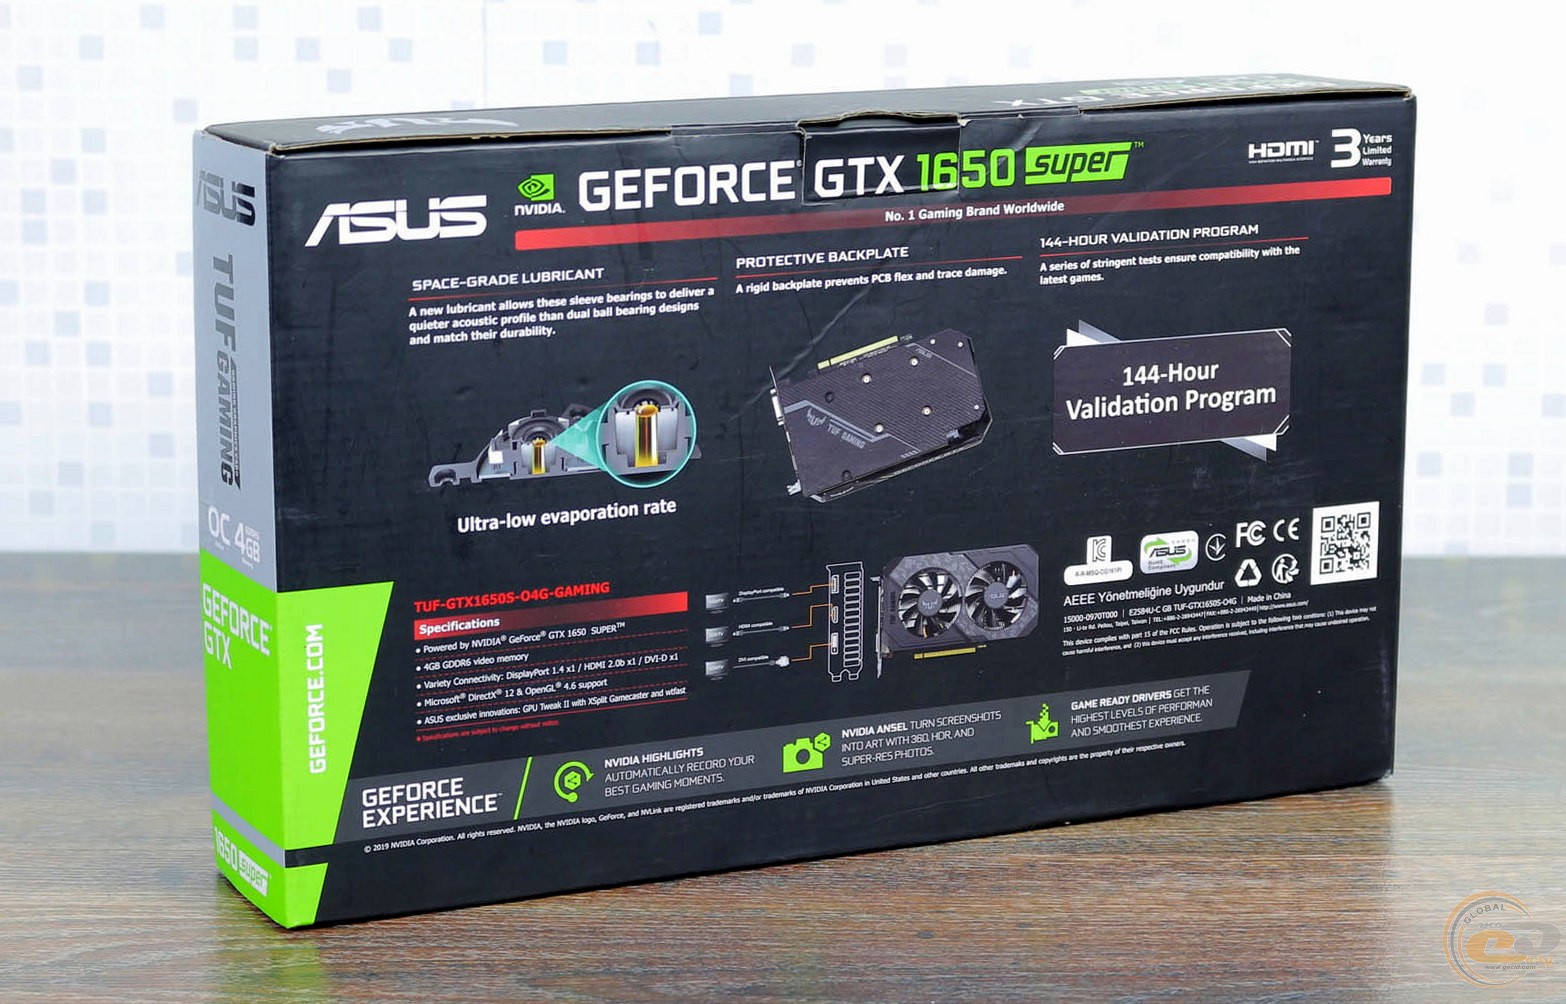 Asus gtx1650 tuf gaming. ASUS TUF GTX 1650 super. GEFORCE GEFORCE GTX 1650 super. GEFORCE GTX 1650 коробка. GEFORCE GTX 1650 super коробка.